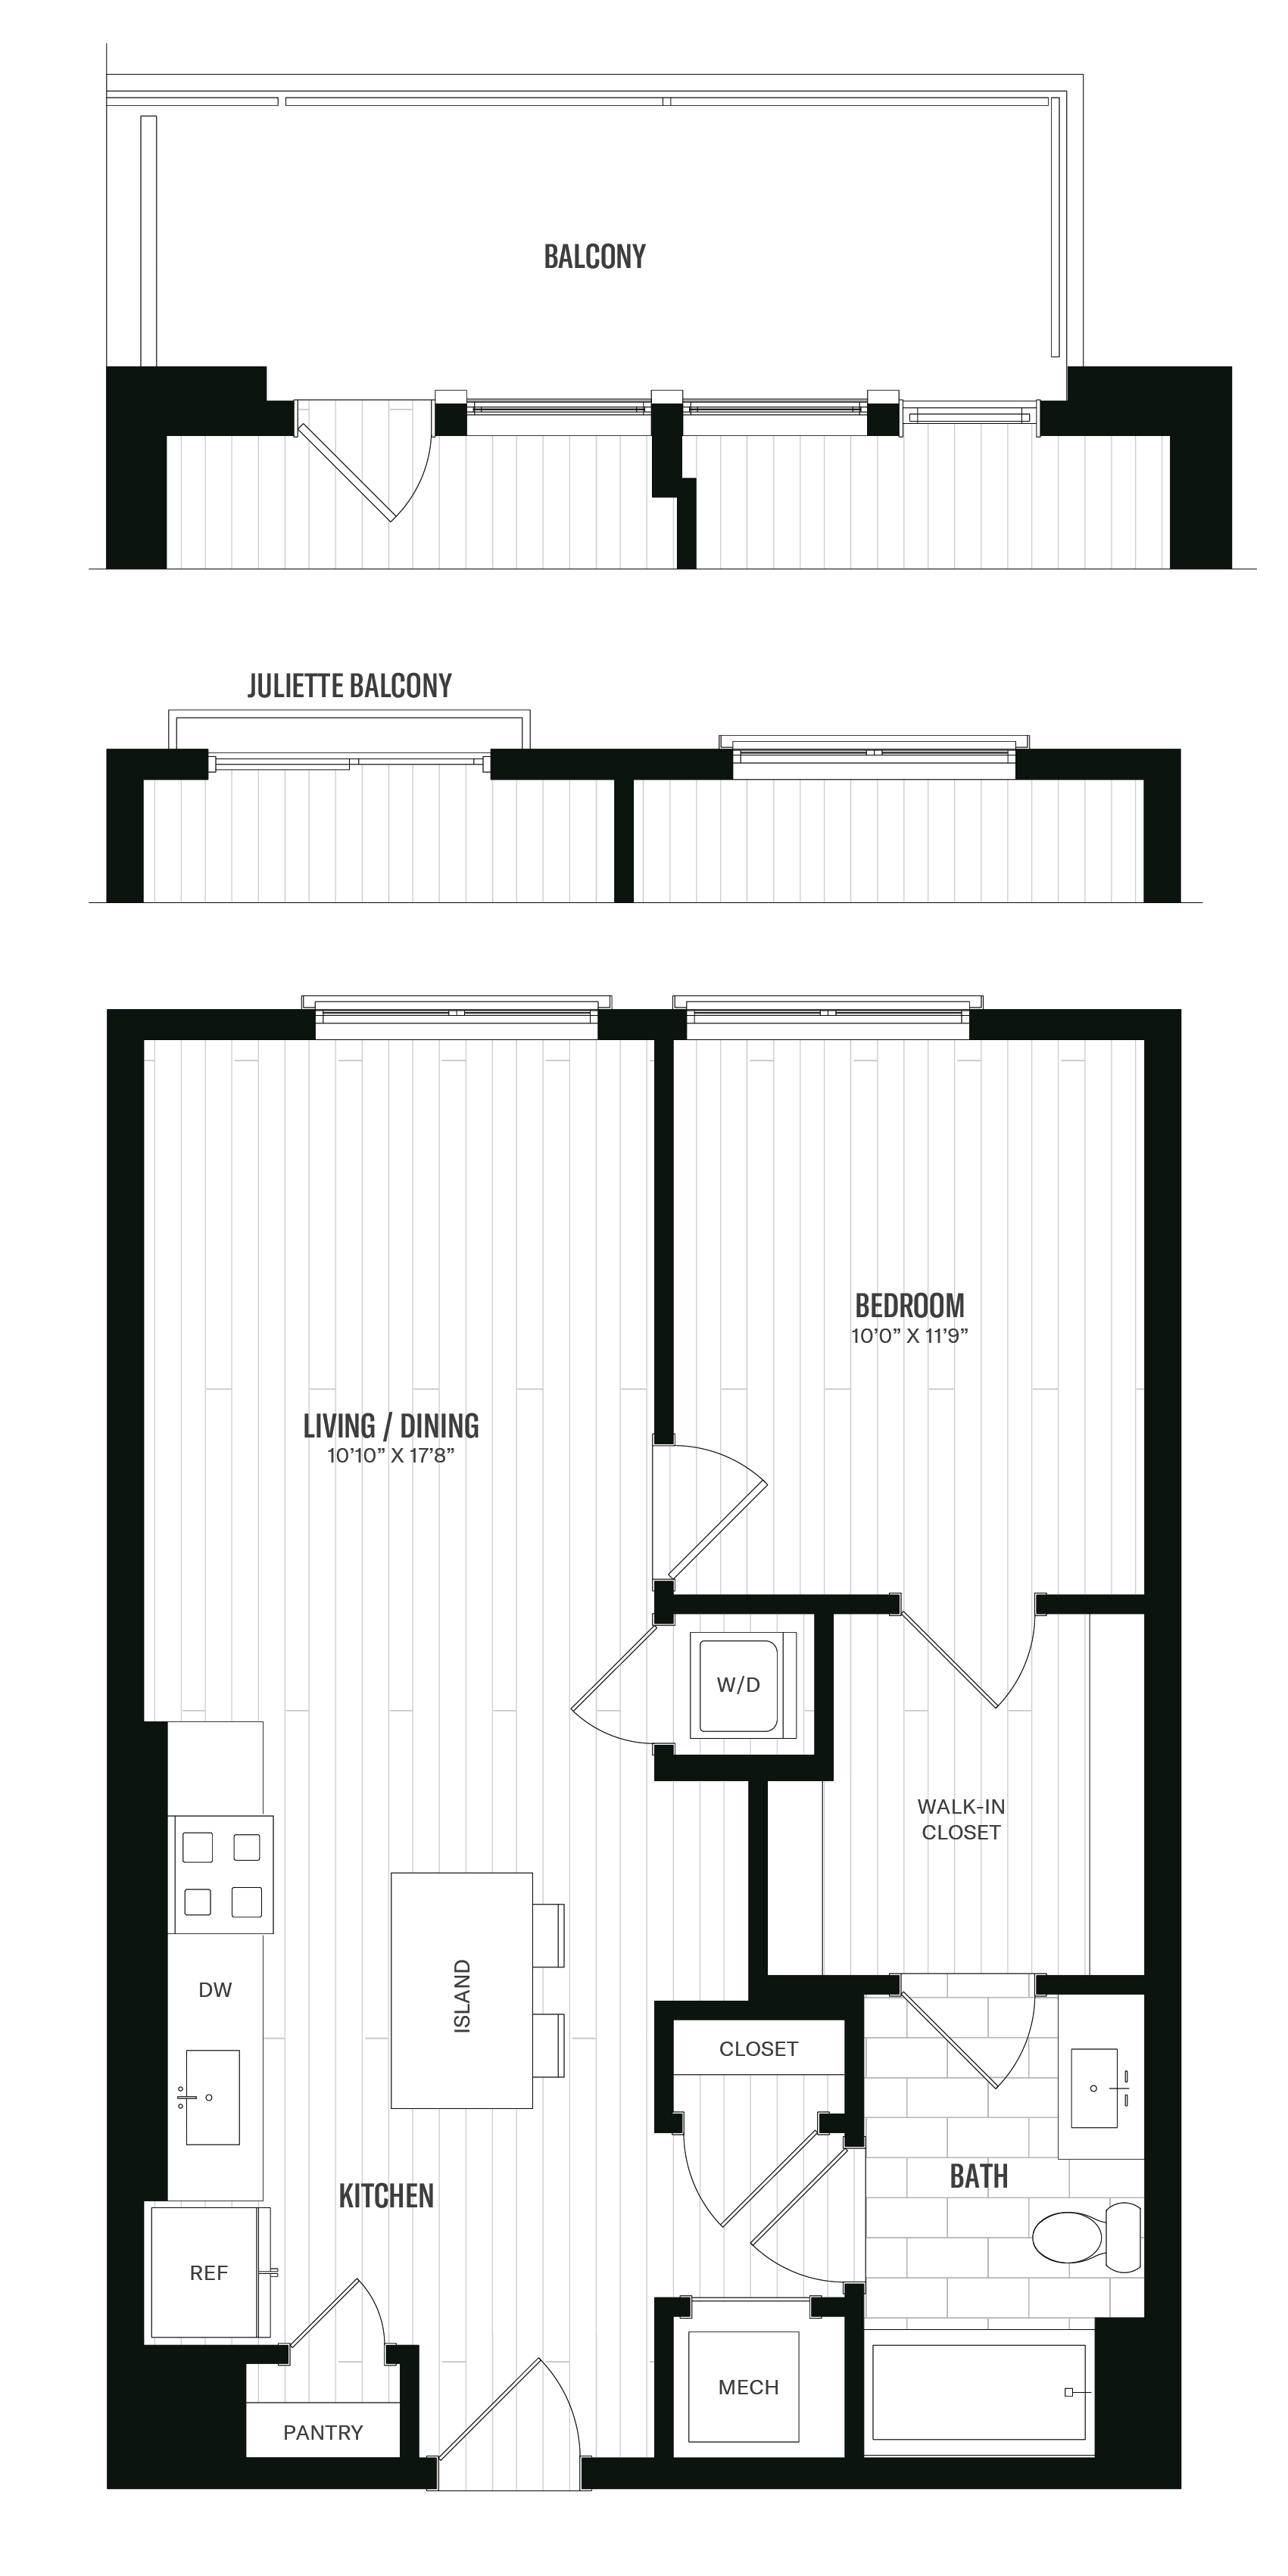 Floorplan image of unit 433